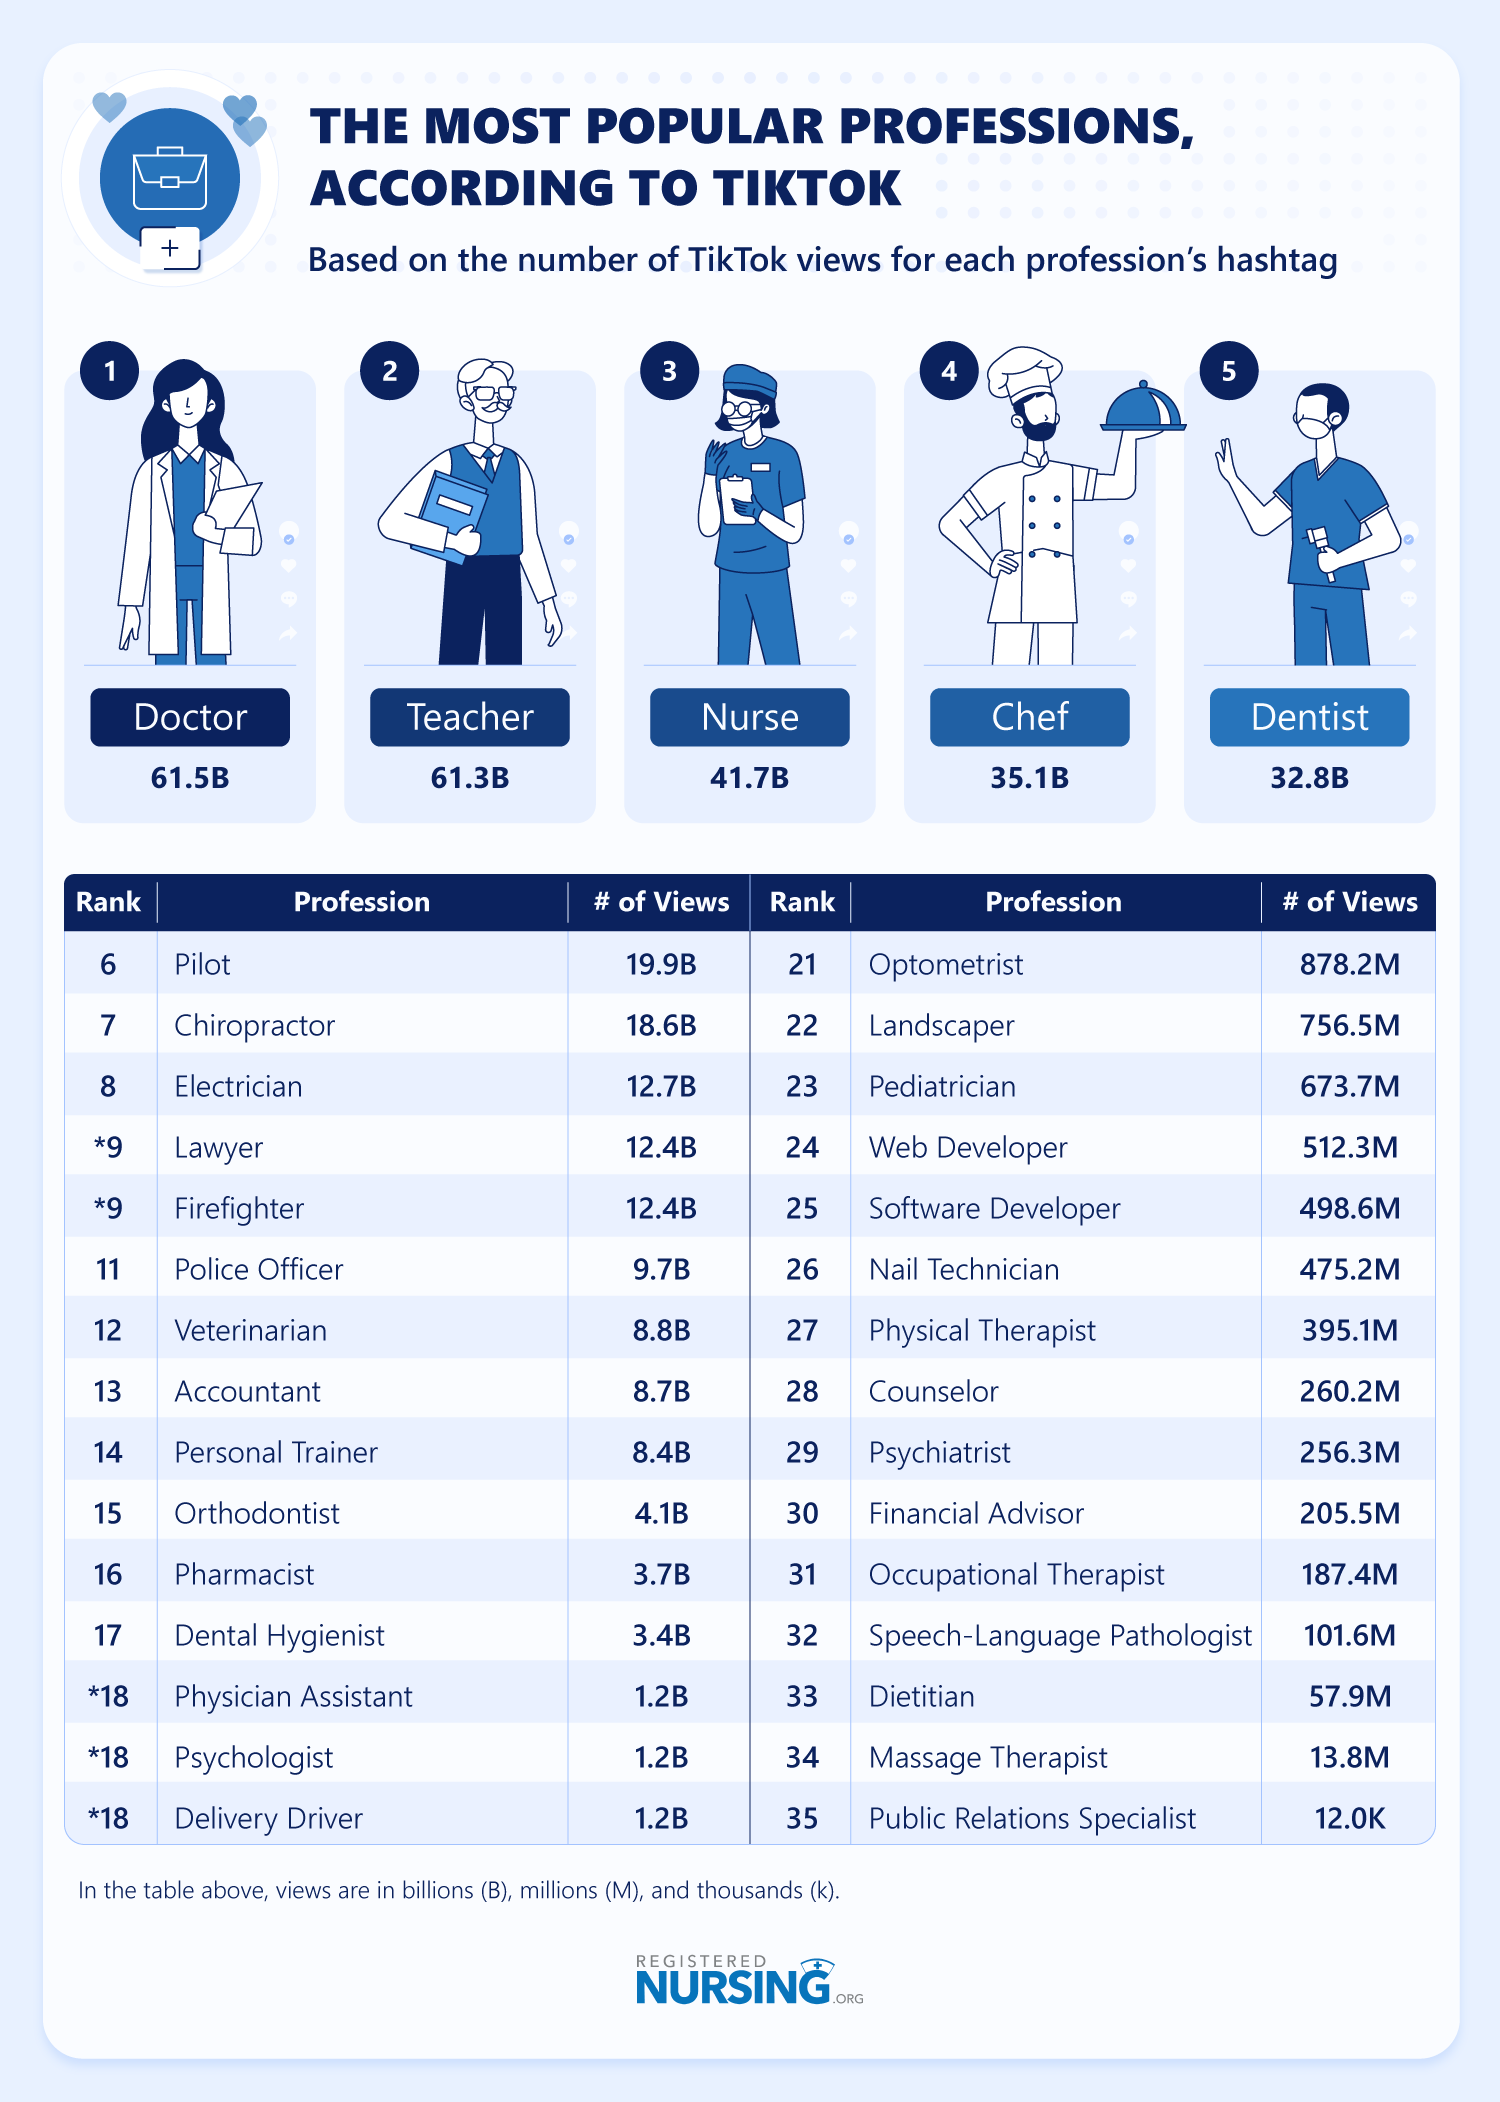 根据TikTok最受欢迎的职业。护理职业拥有超过410亿的观点。